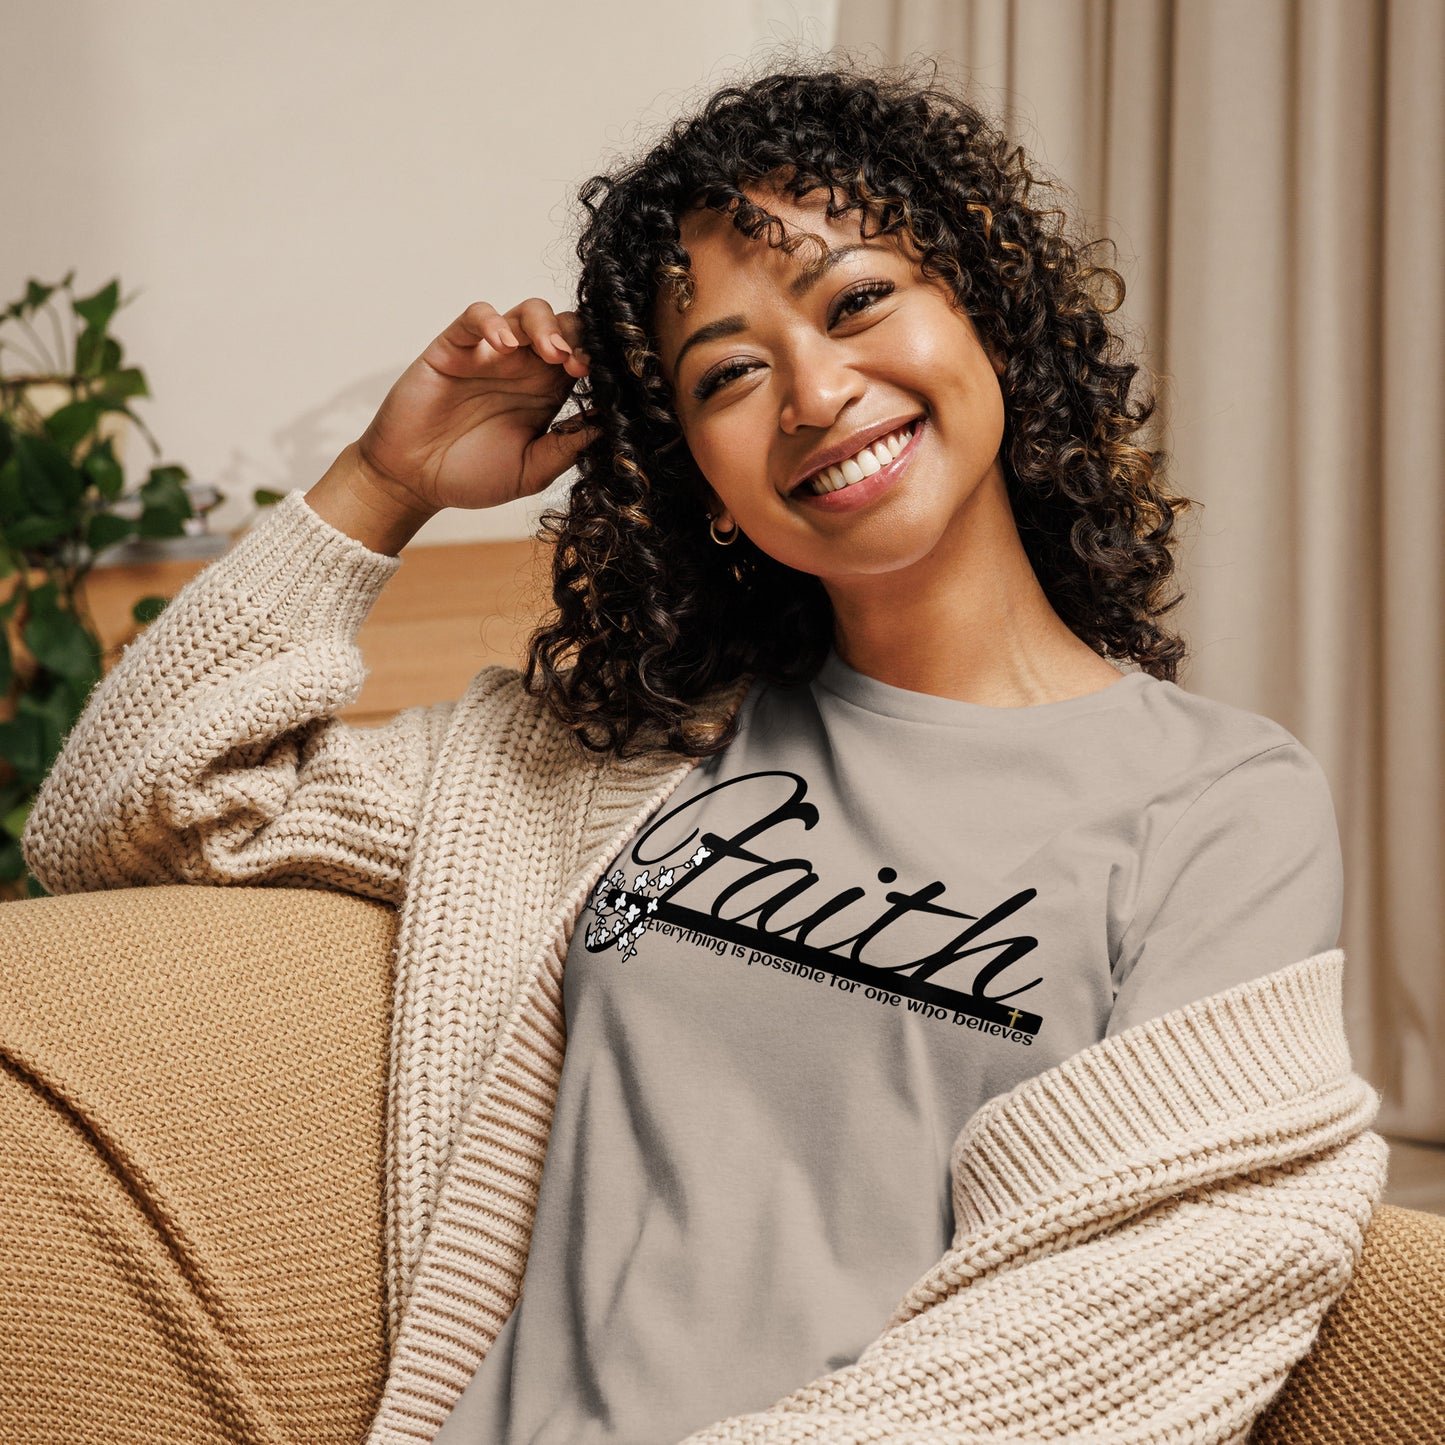 Women's Relaxed T-Shirt FAITH